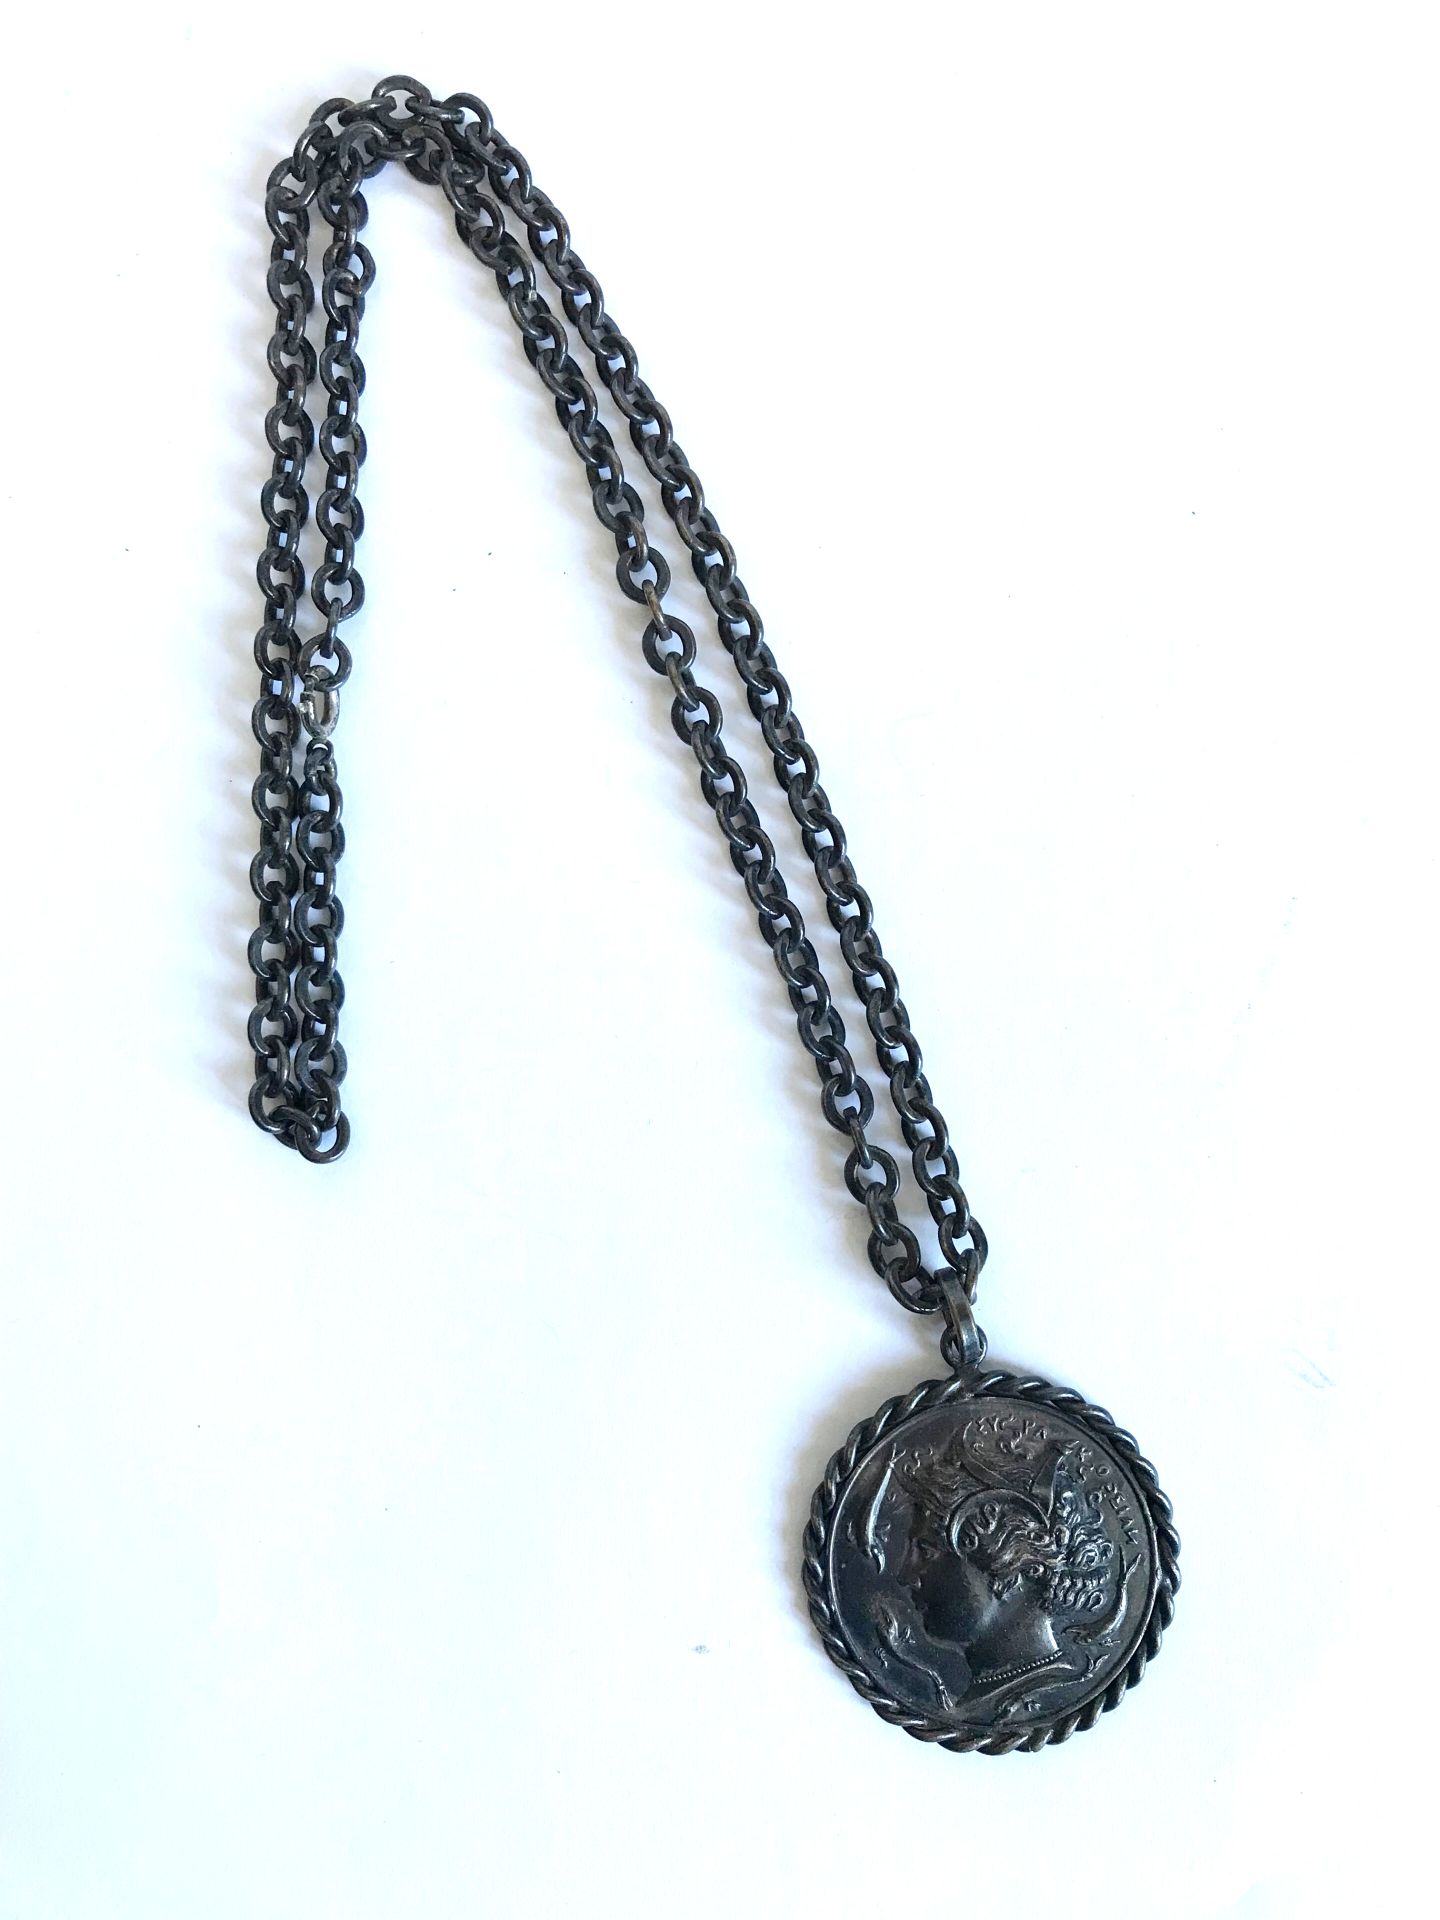 Null 古典风格的黑金属链和奖章
希腊的纪念品